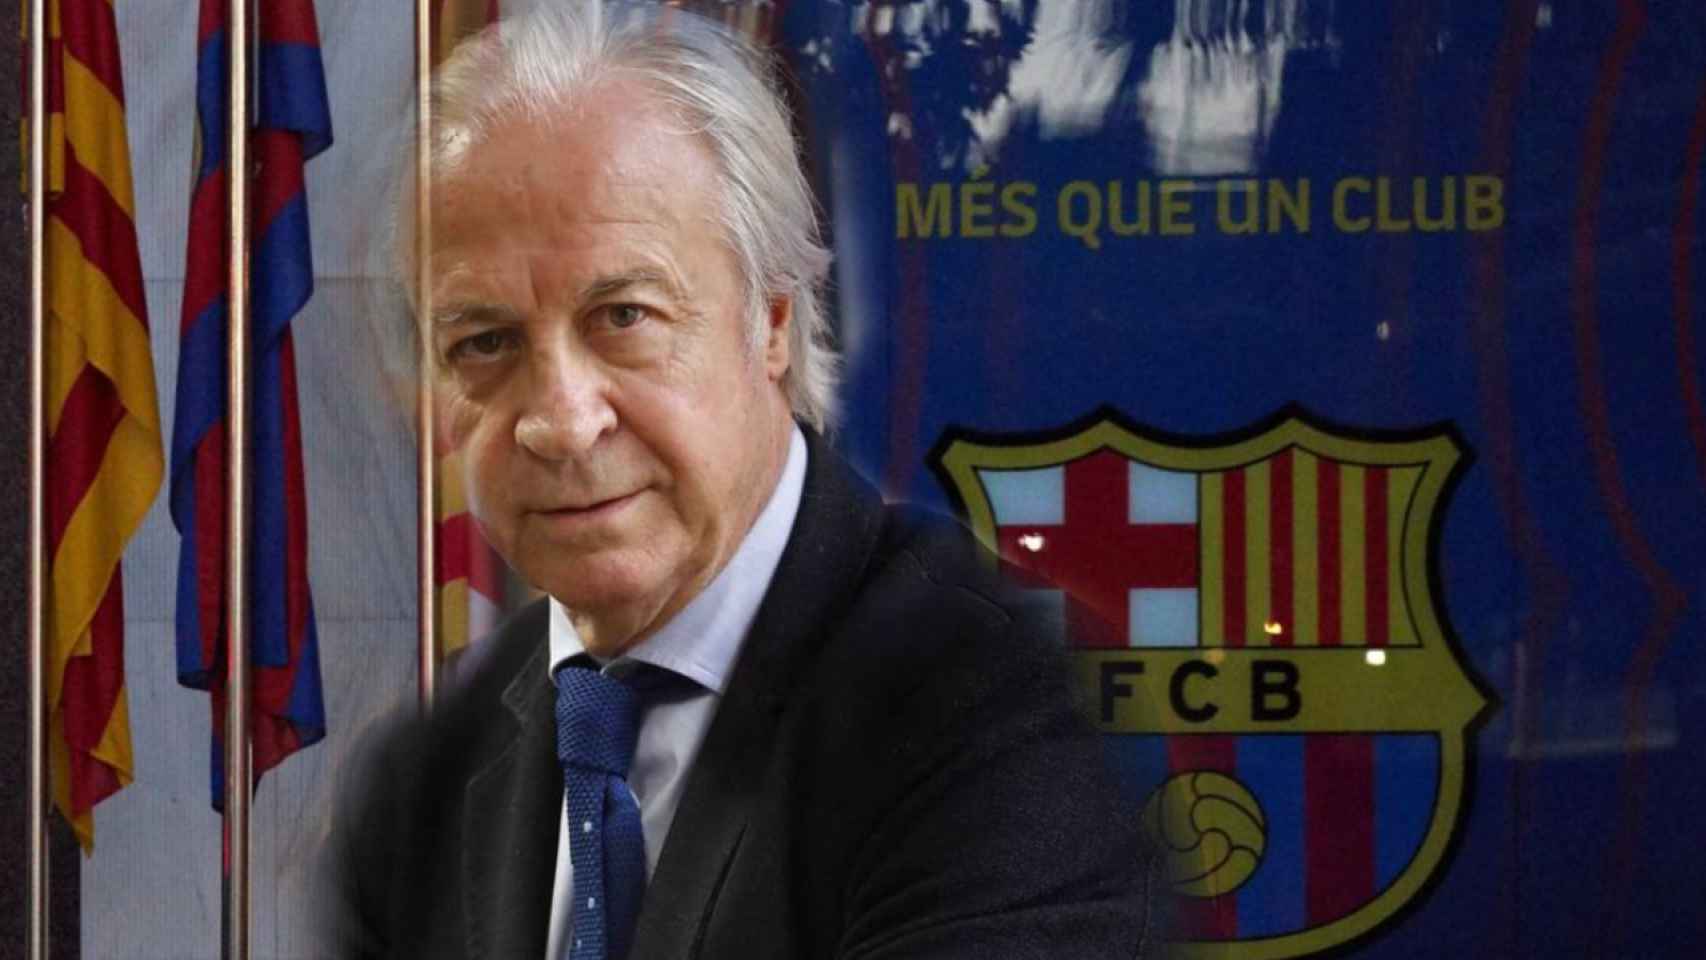 Carles Tusquets y las oficinas del Barça en un fotomontaje